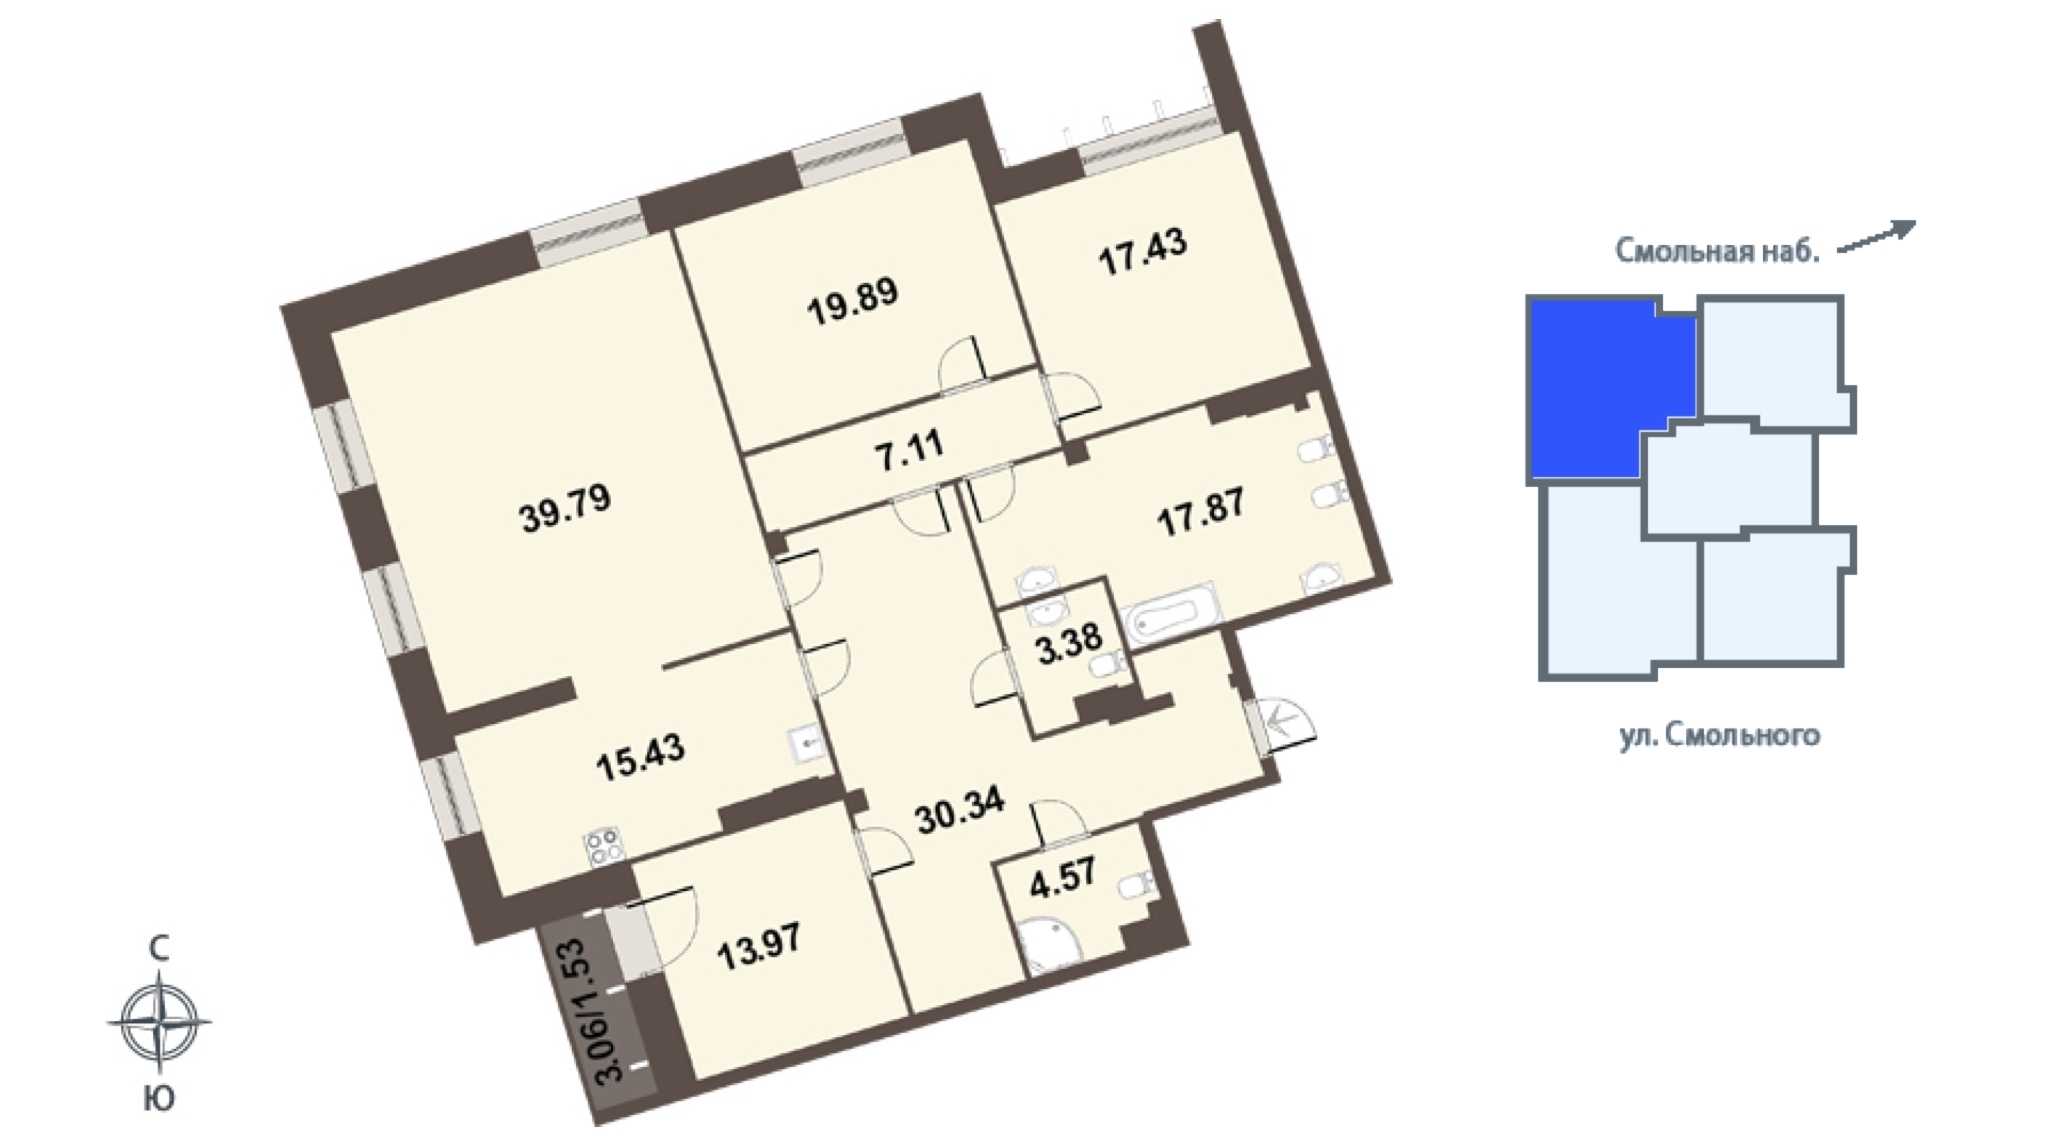 Четырехкомнатная квартира в Группа ЛСР: площадь 172.4 м2 , этаж: 6 – купить в Санкт-Петербурге